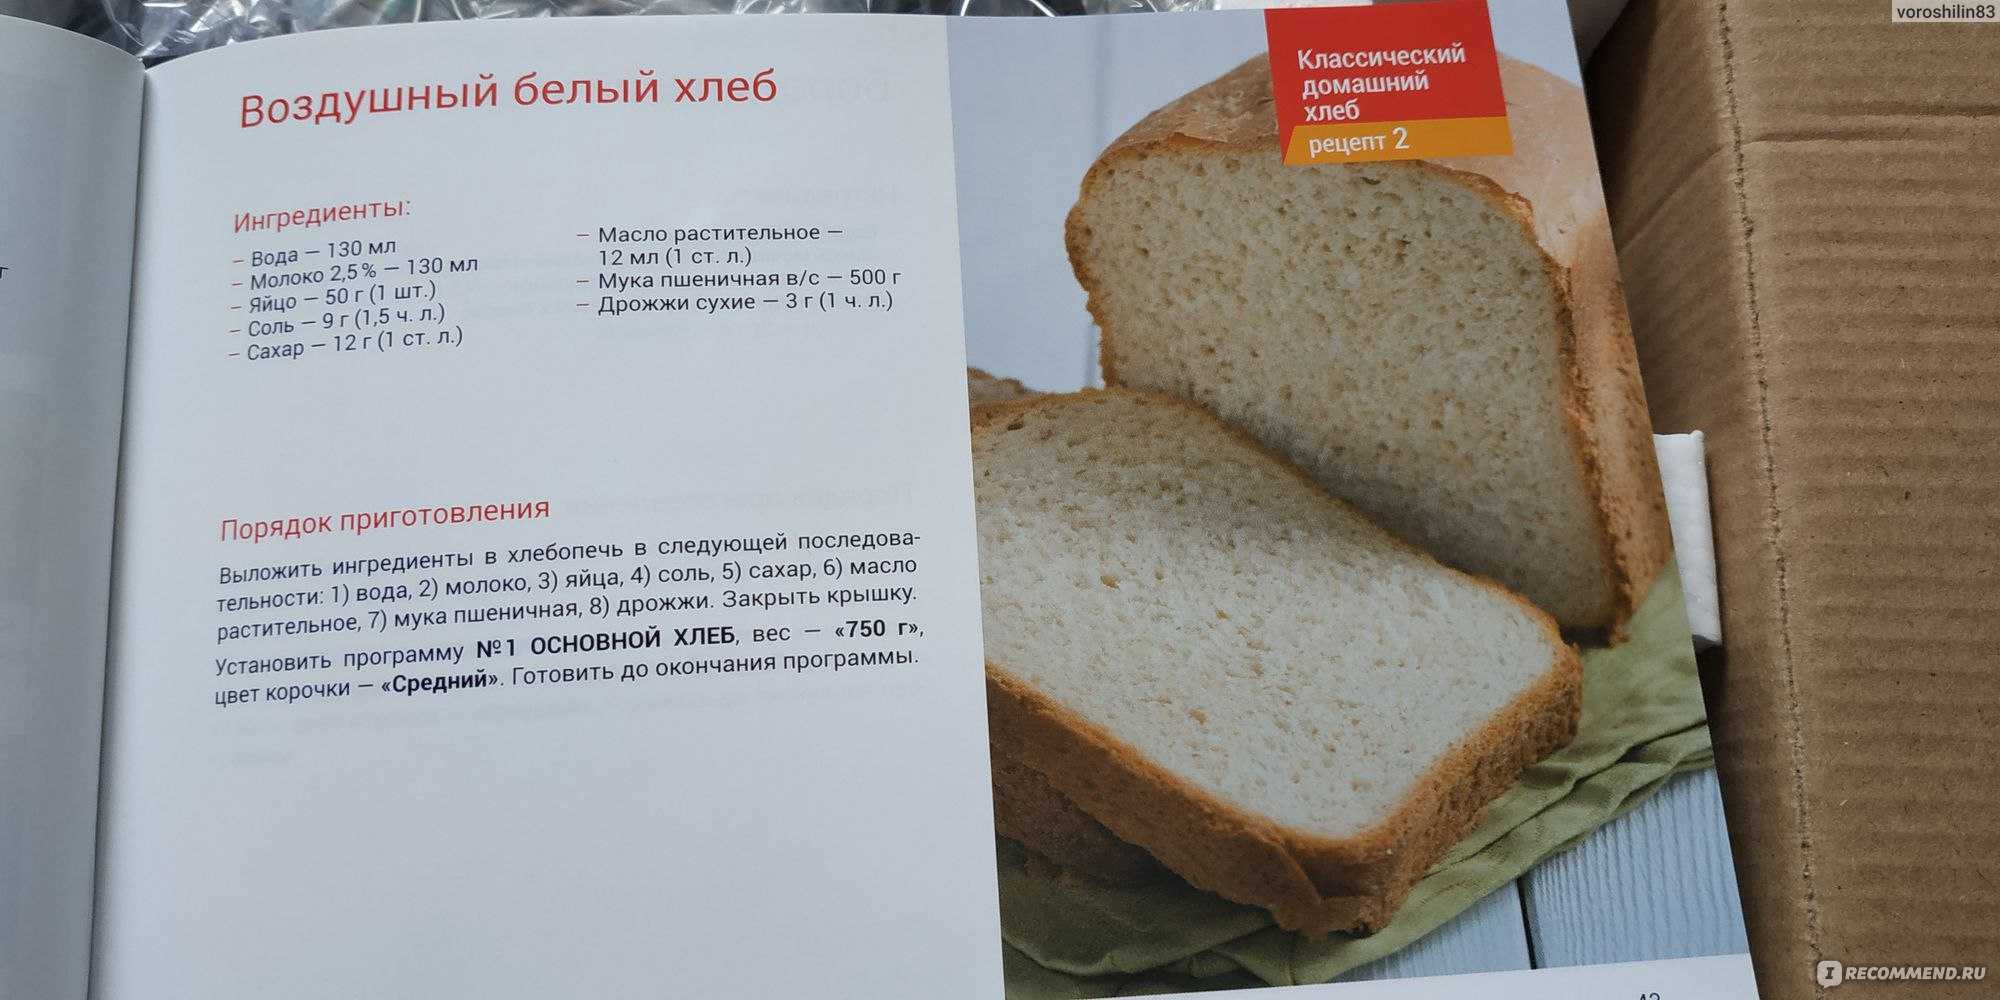 Приготовить в хлебопечке рецепты. Книжка с рецептами для хлебопечки. Рецепт хлеба. Рецепт белого хлеба для хлебопечки. Ингредиенты для выпечки хлеба в хлебопечке.